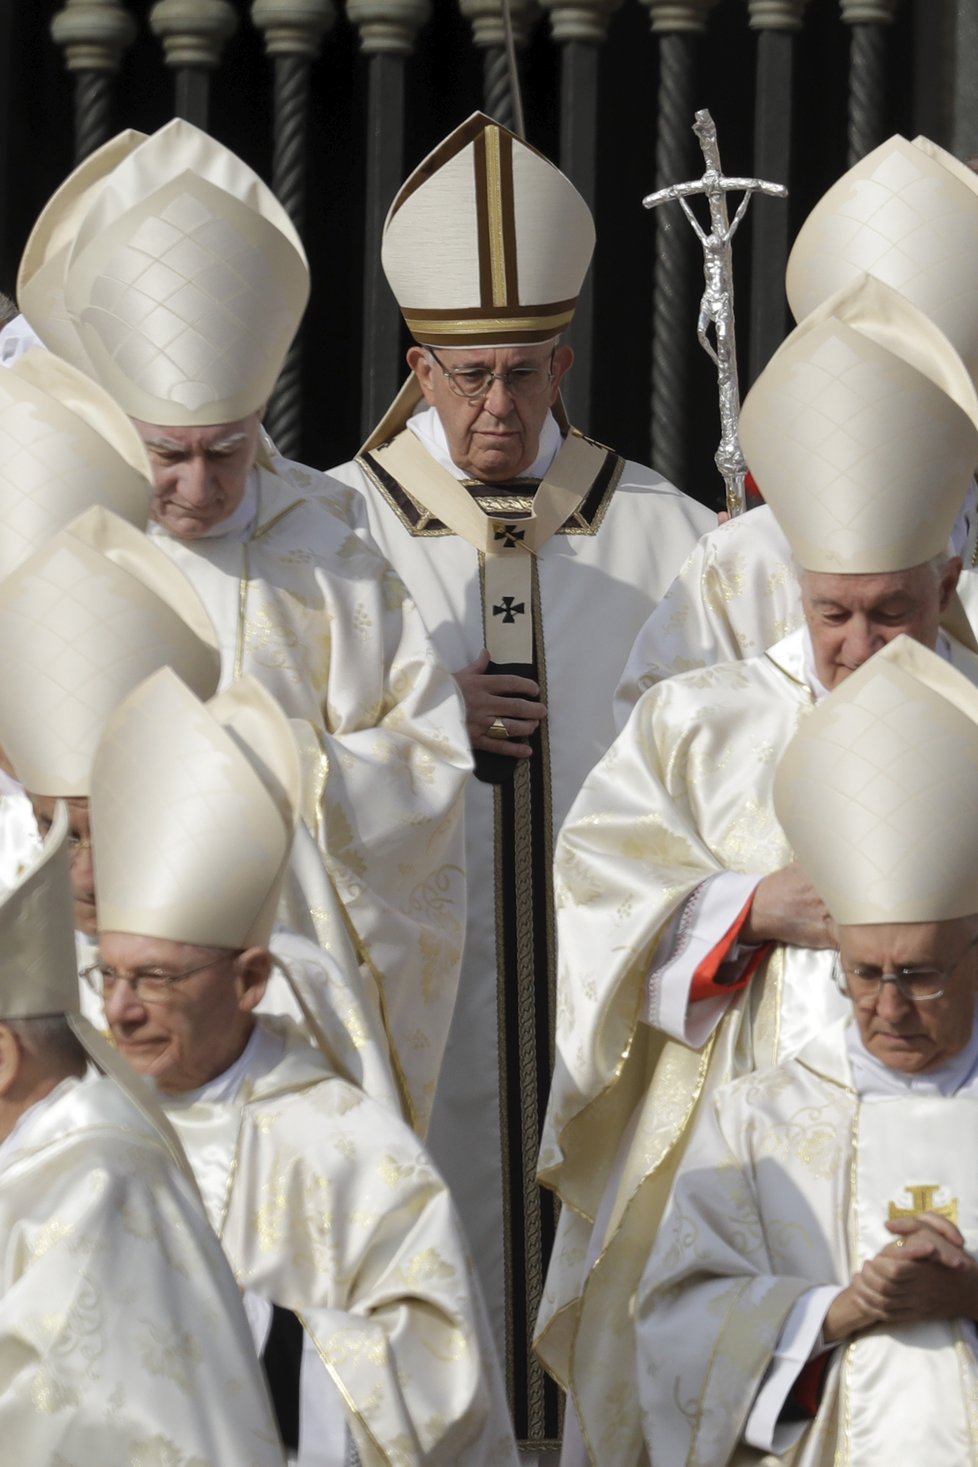 Papež František ve Vatikánu svatořečil papeže Pavla VI. a arcibiskupa Romera.